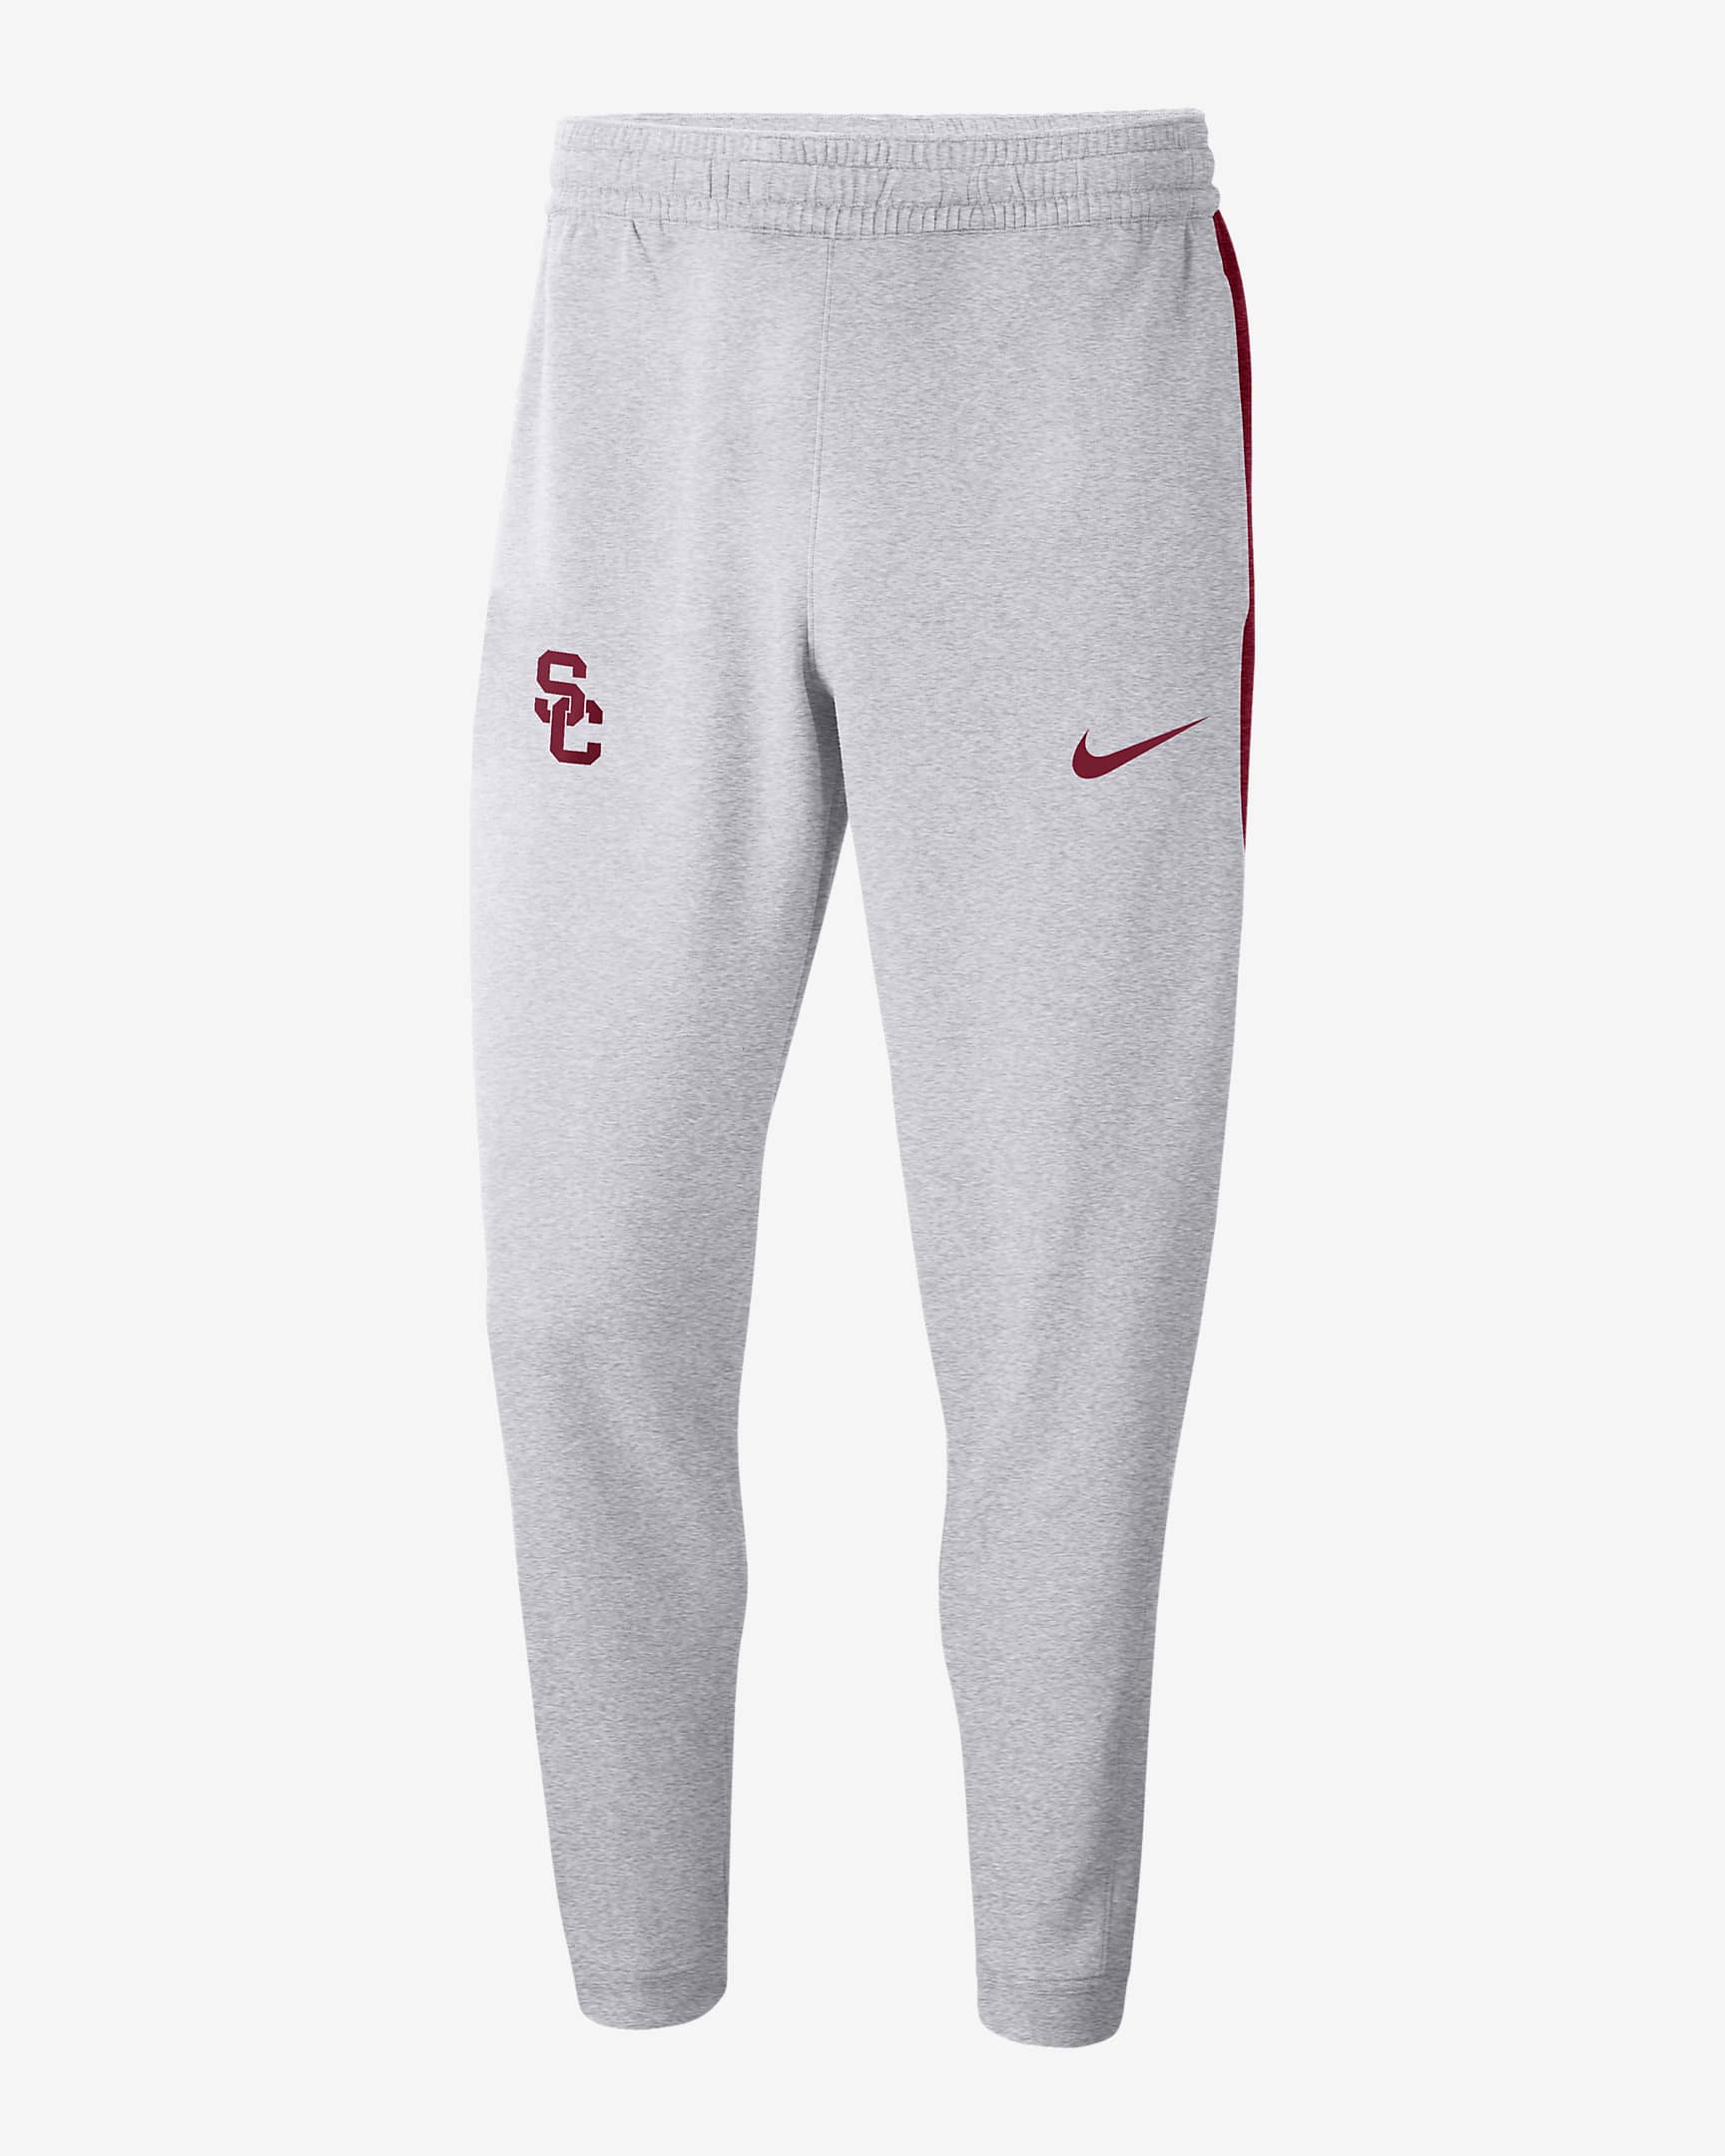 Nike College Spotlight (USC) Men's Pants. Nike.com